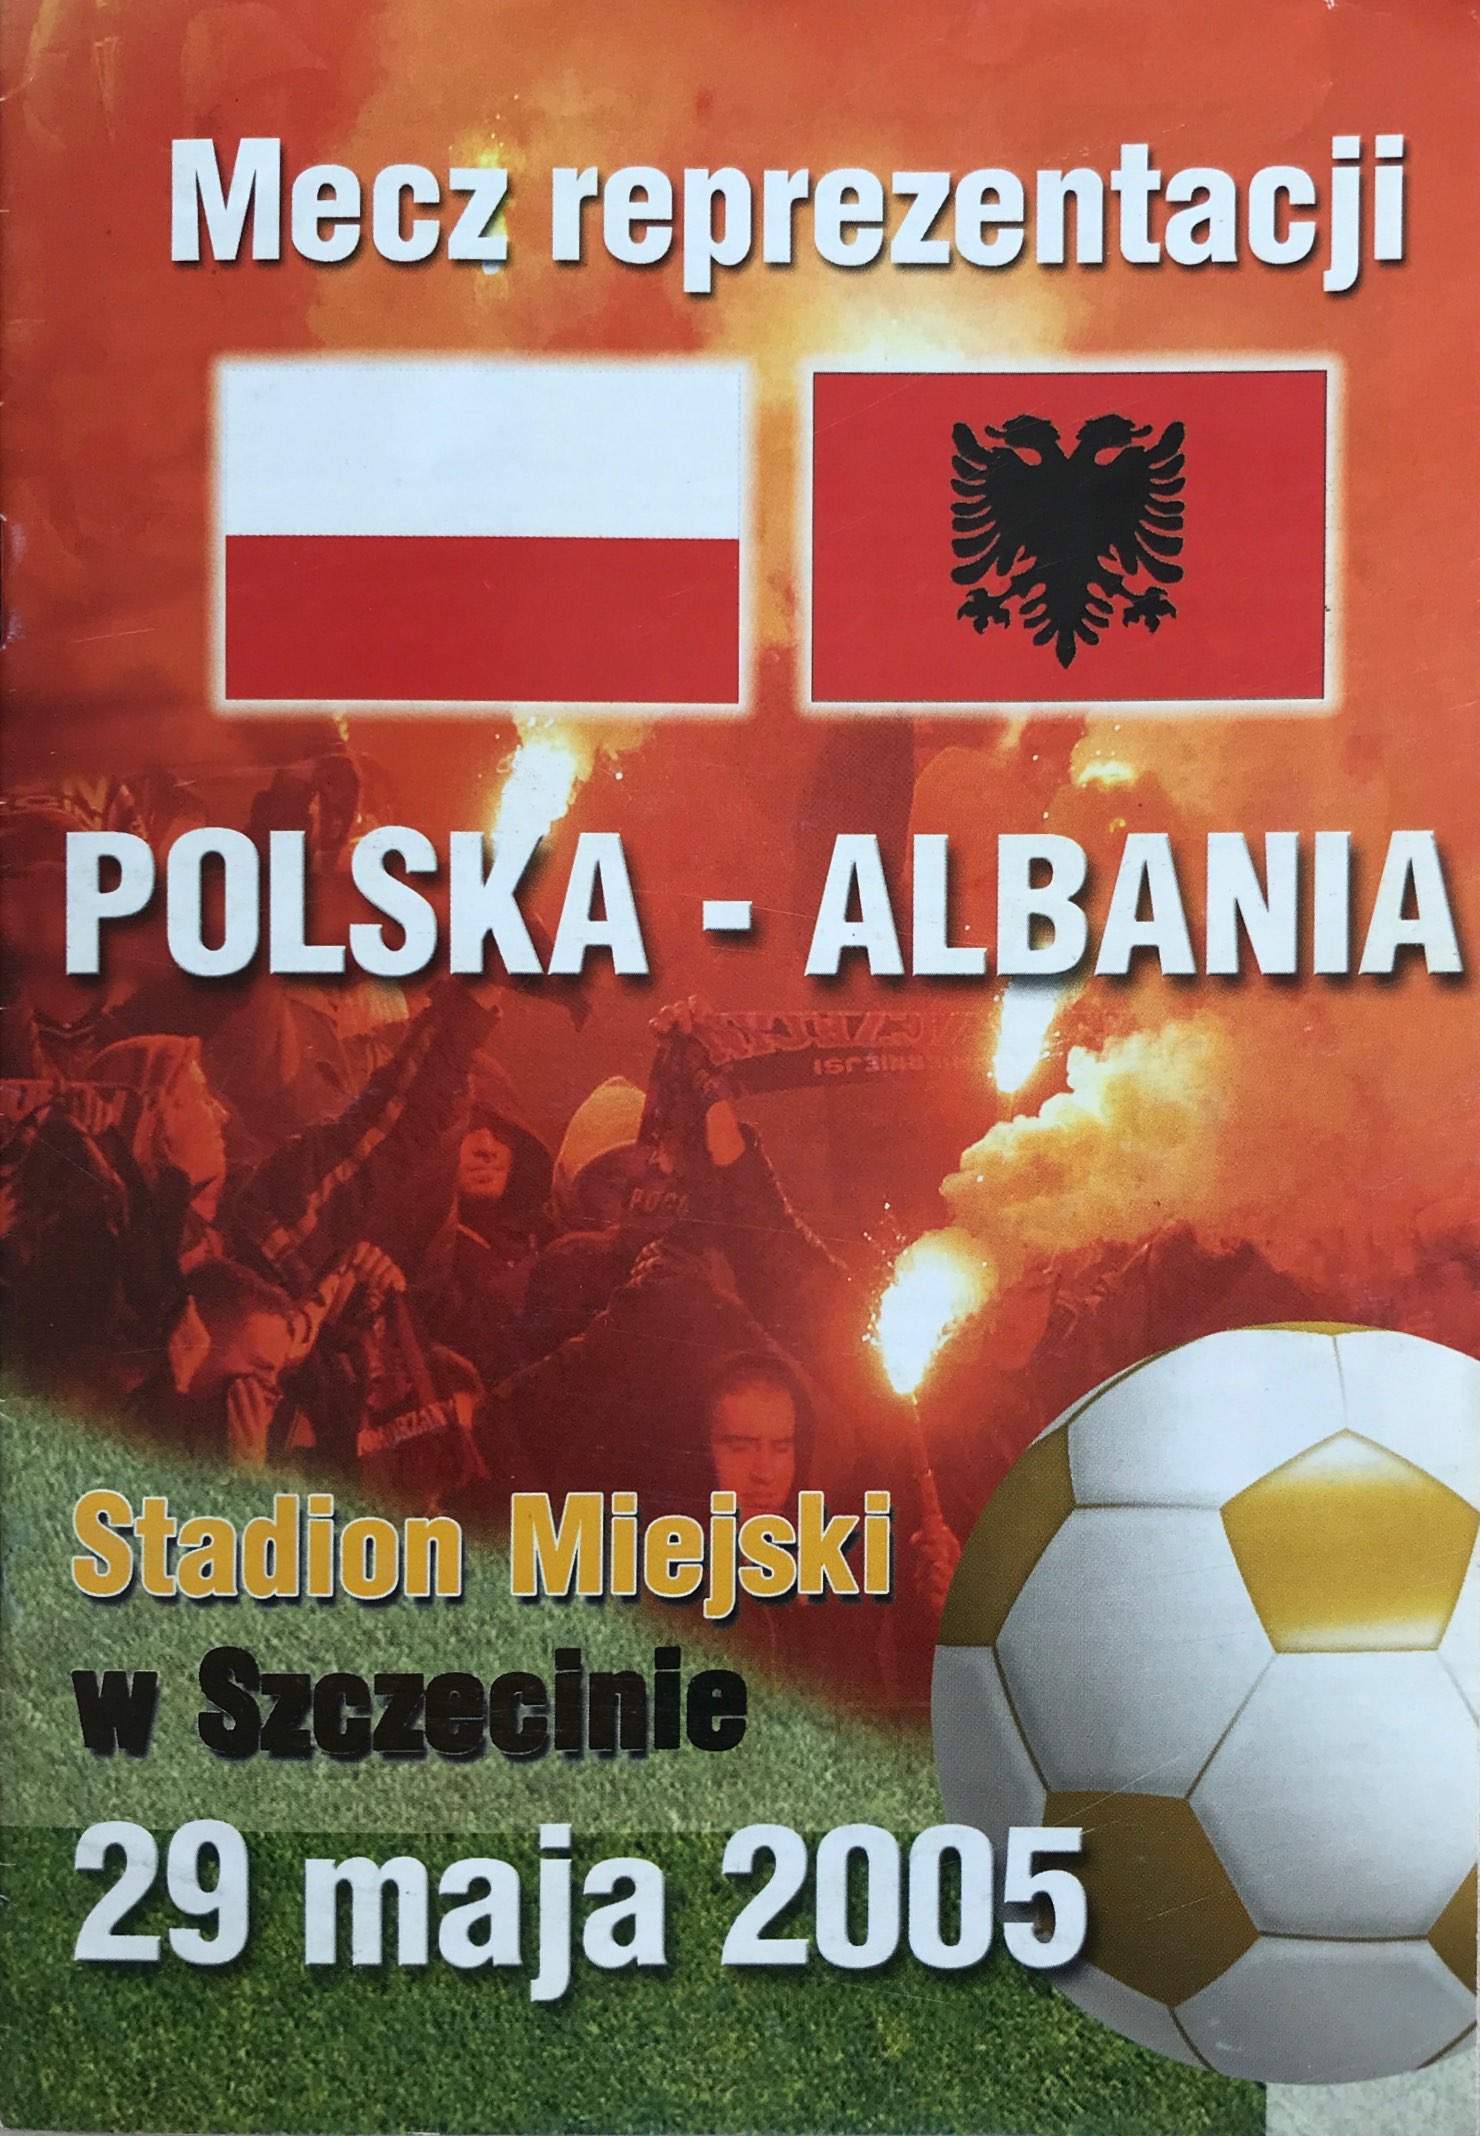 Program meczowy Polska - Albania 1:0 (29.05.2005).